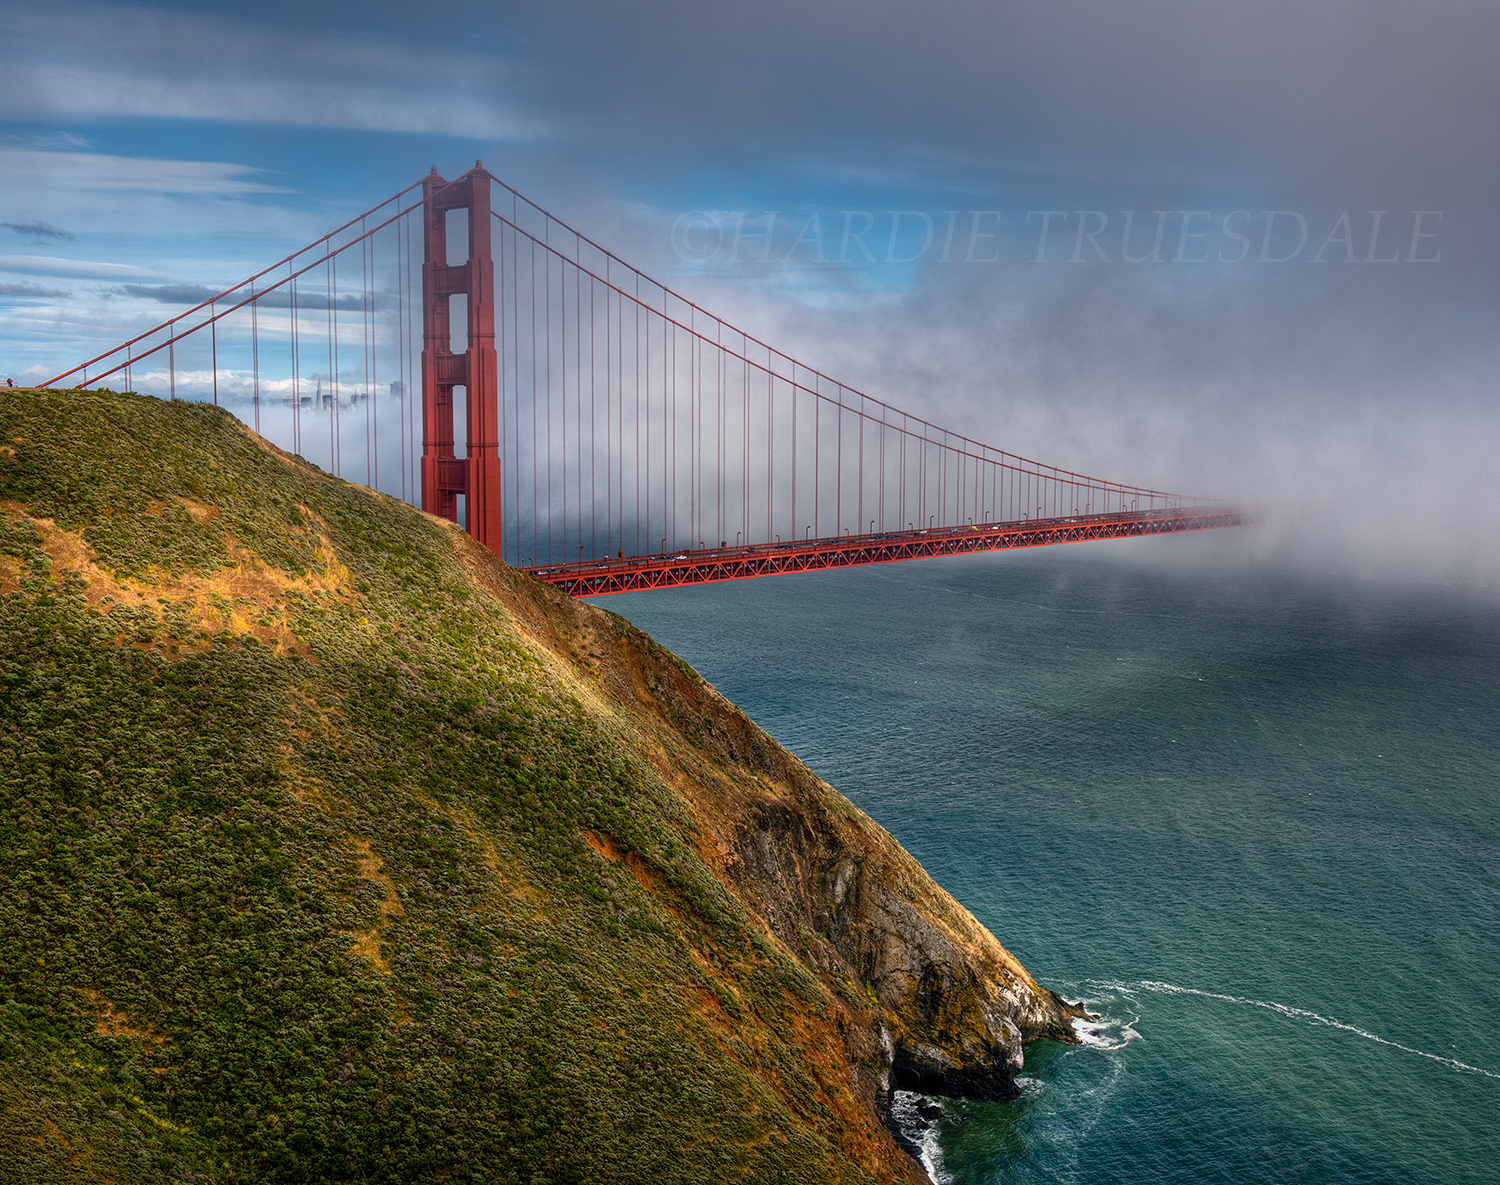 CA#132 "Fog Bank, Golden Gate Bridge"